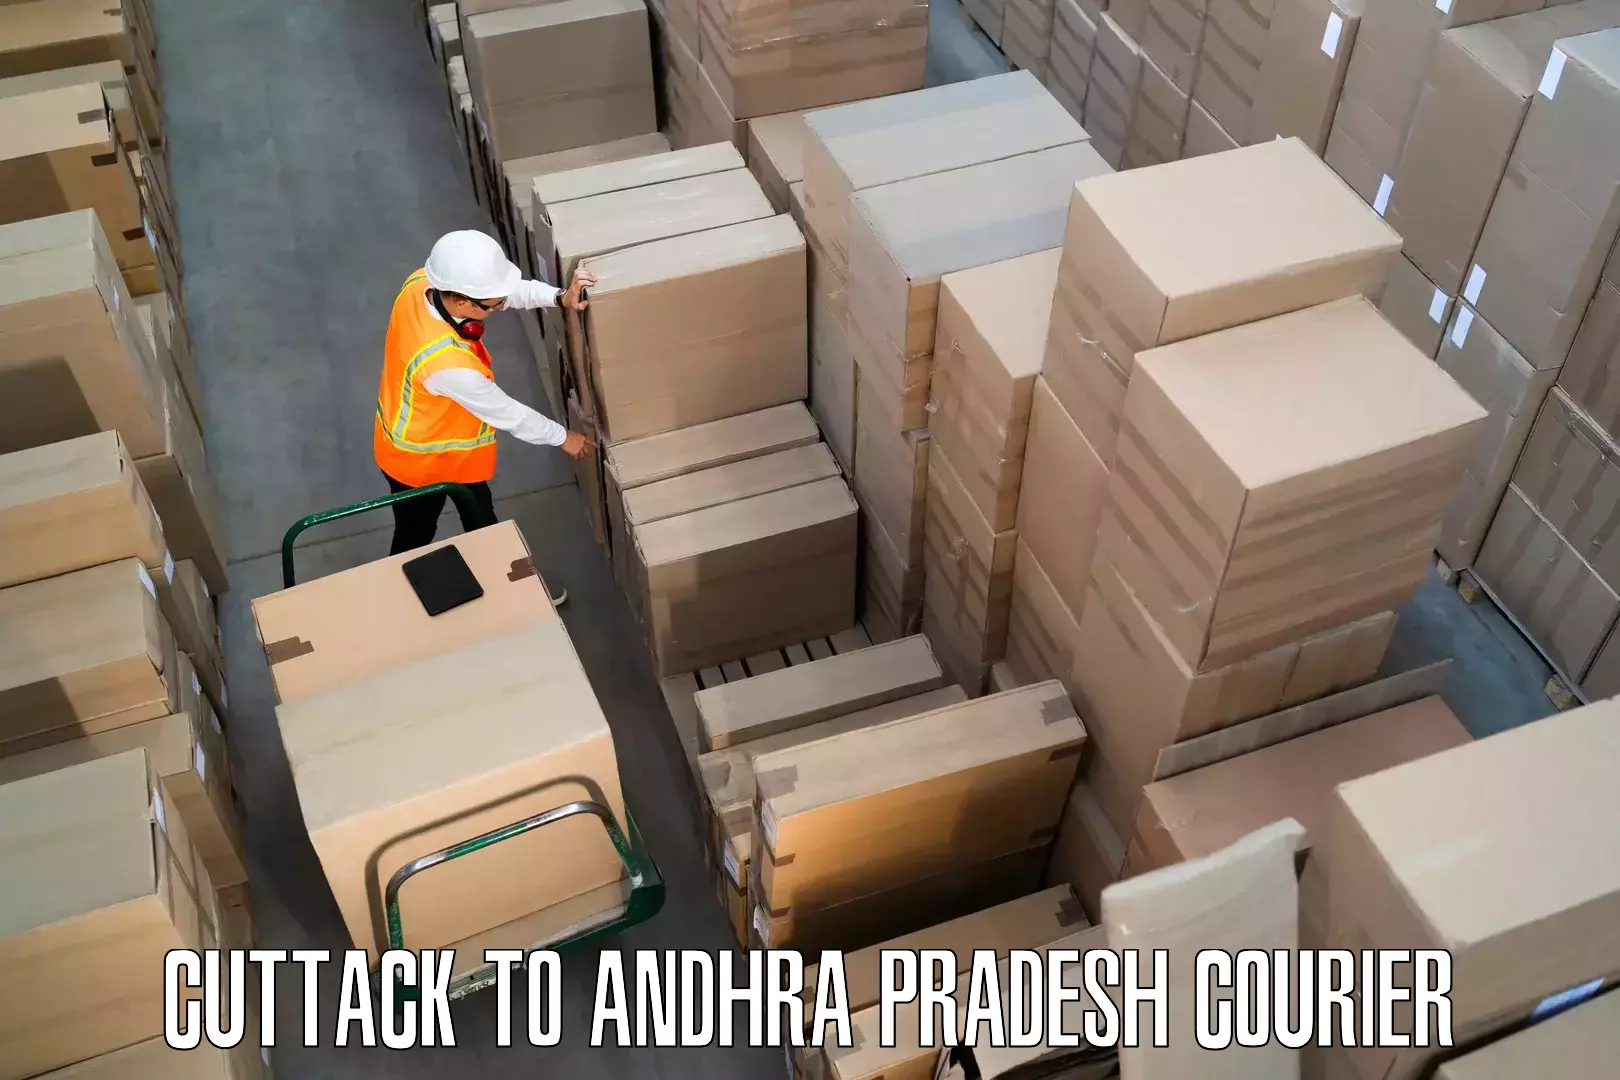 Furniture transport service Cuttack to Andhra Pradesh